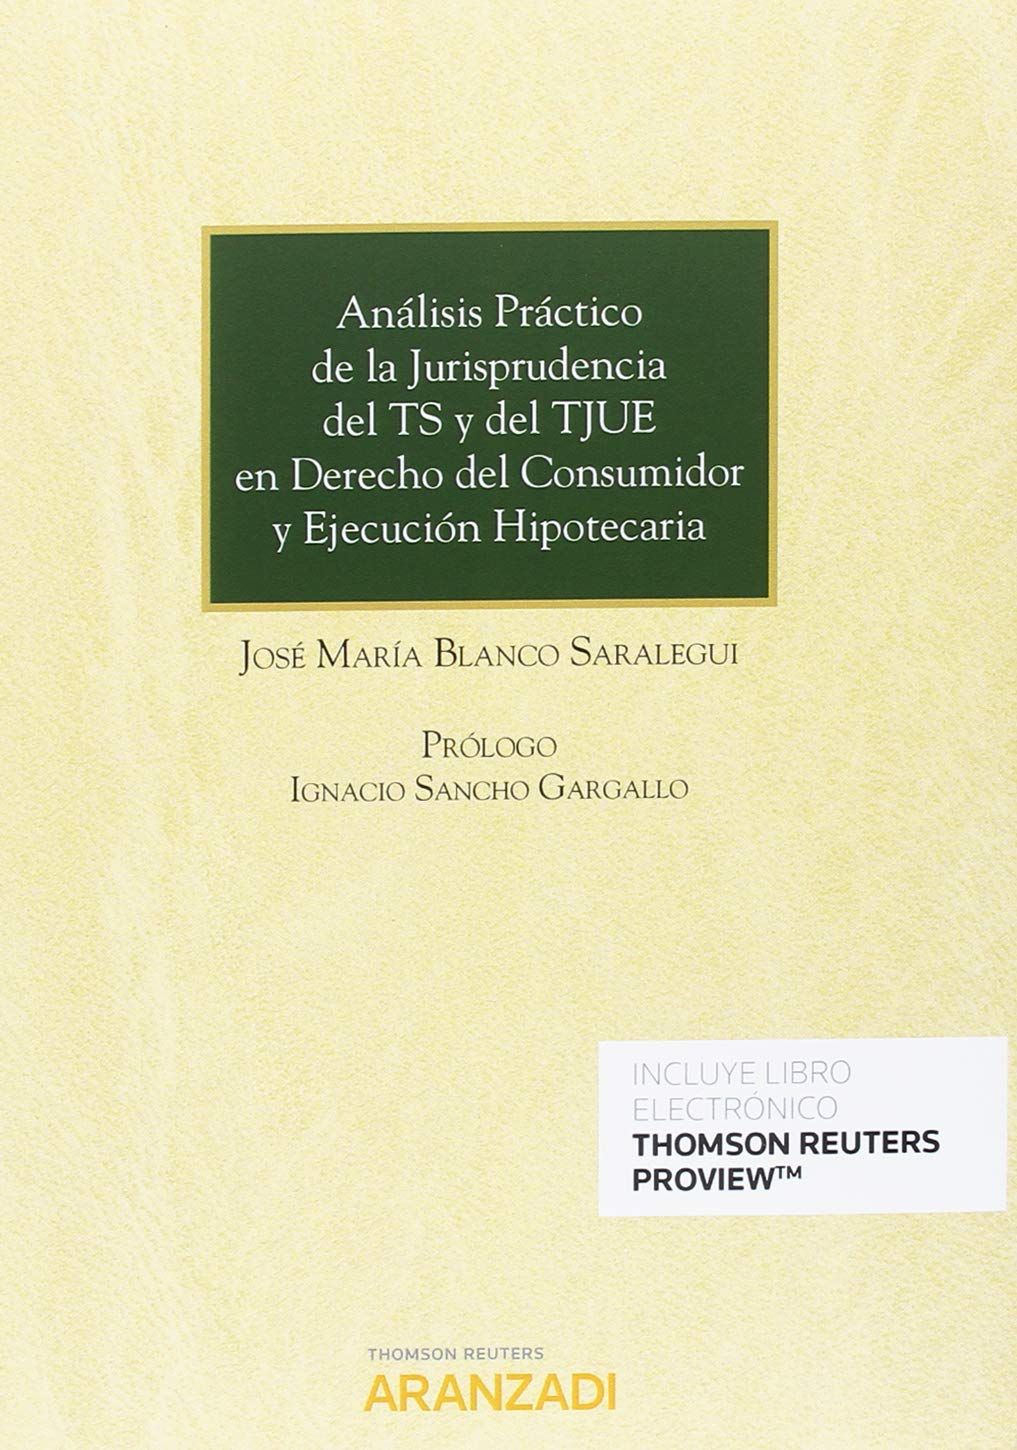 Imagen de portada del libro Análisis práctico de la jurisprudencia del TS y del TJUE en Derecho del consumidor y ejecución hipotecaria